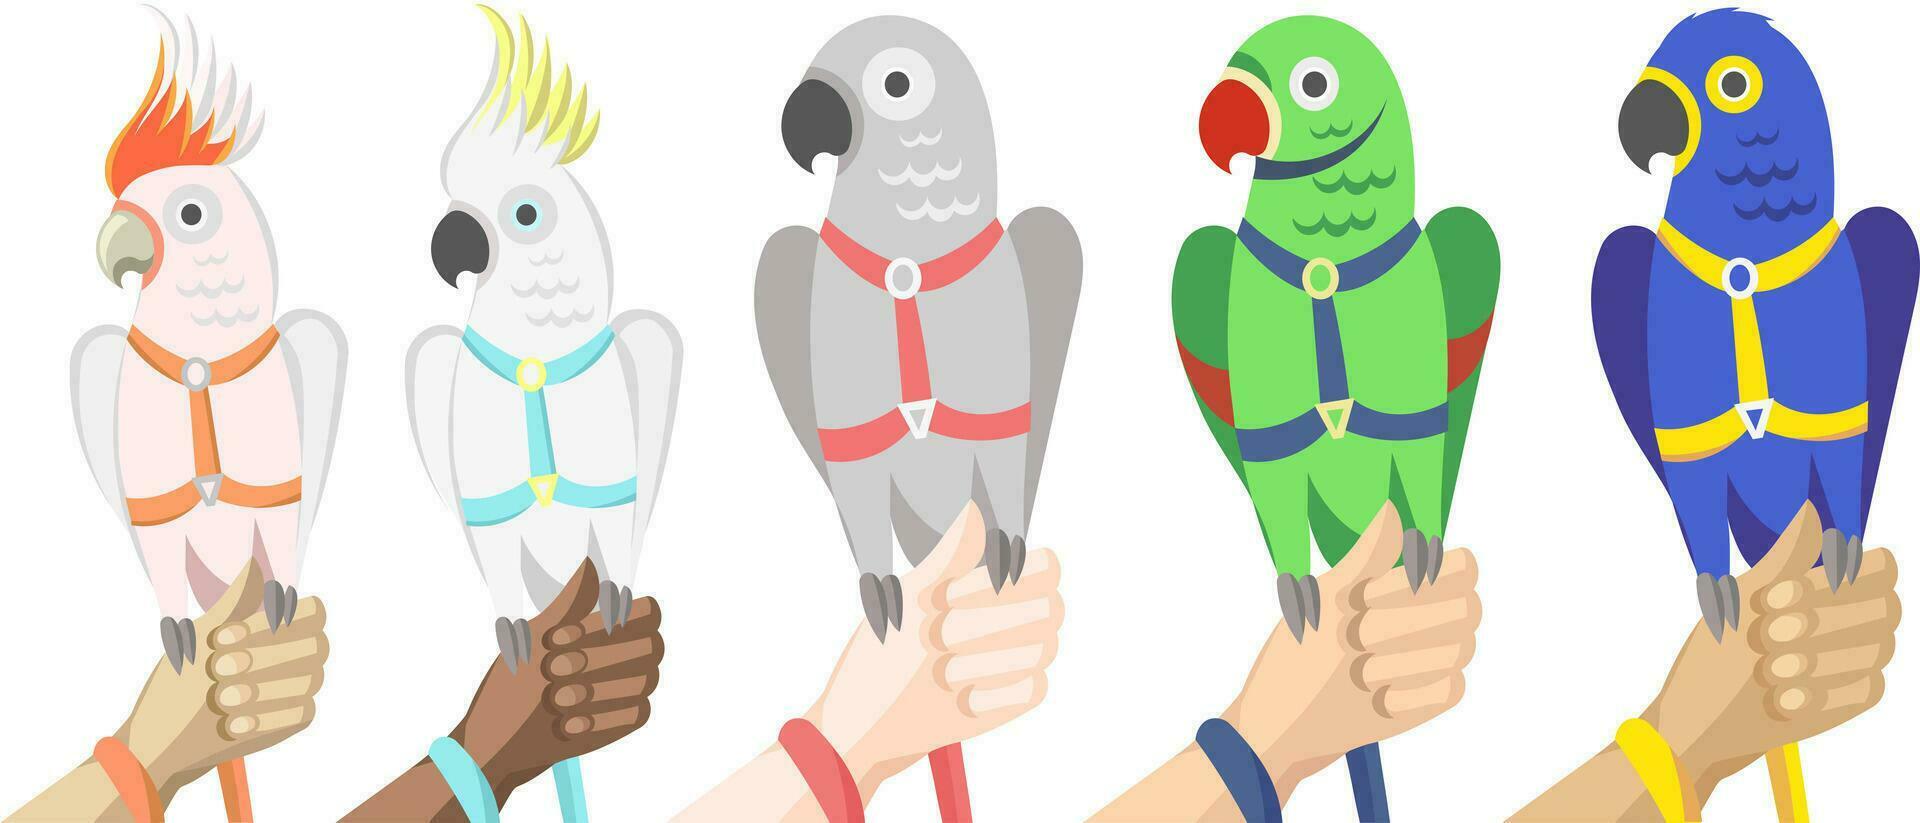 Sammlung von verschiedene Papageien im Geschirr und Leine auf Mensch anders Haut Farben Hände - - Vektor Illustration